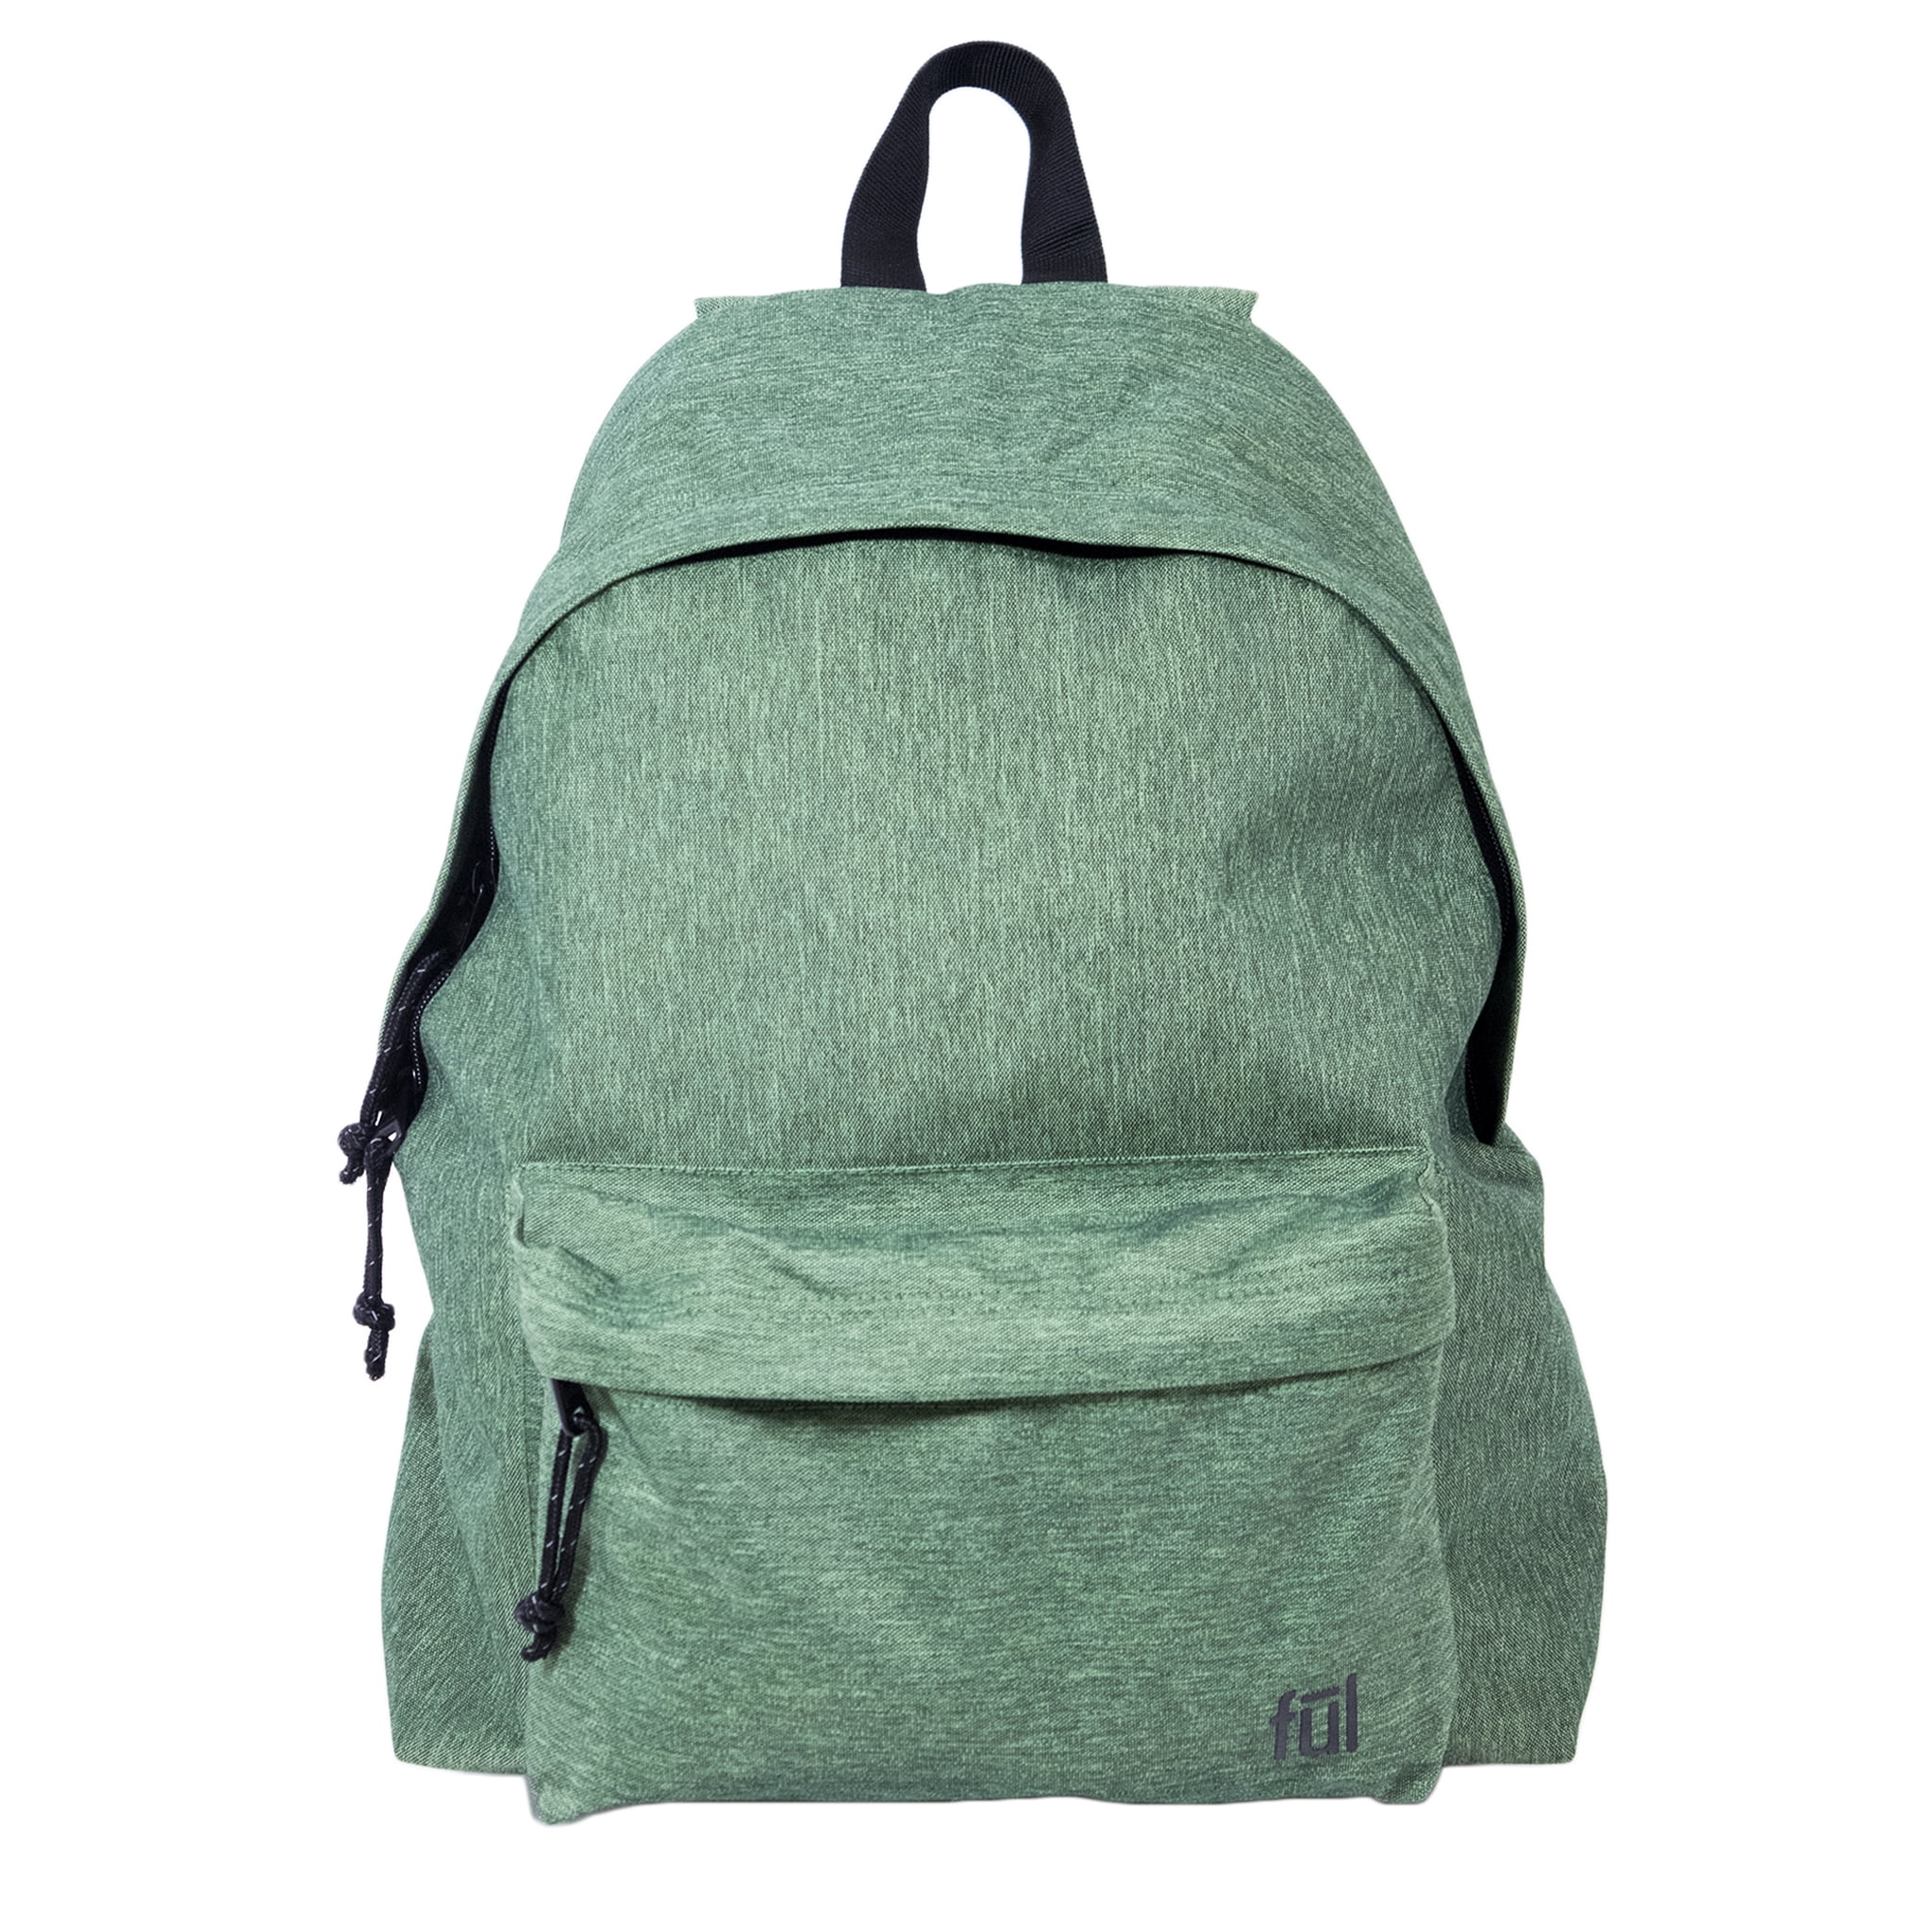 FUL Seamus Multipurpose Backpack, Green - Walmart.com